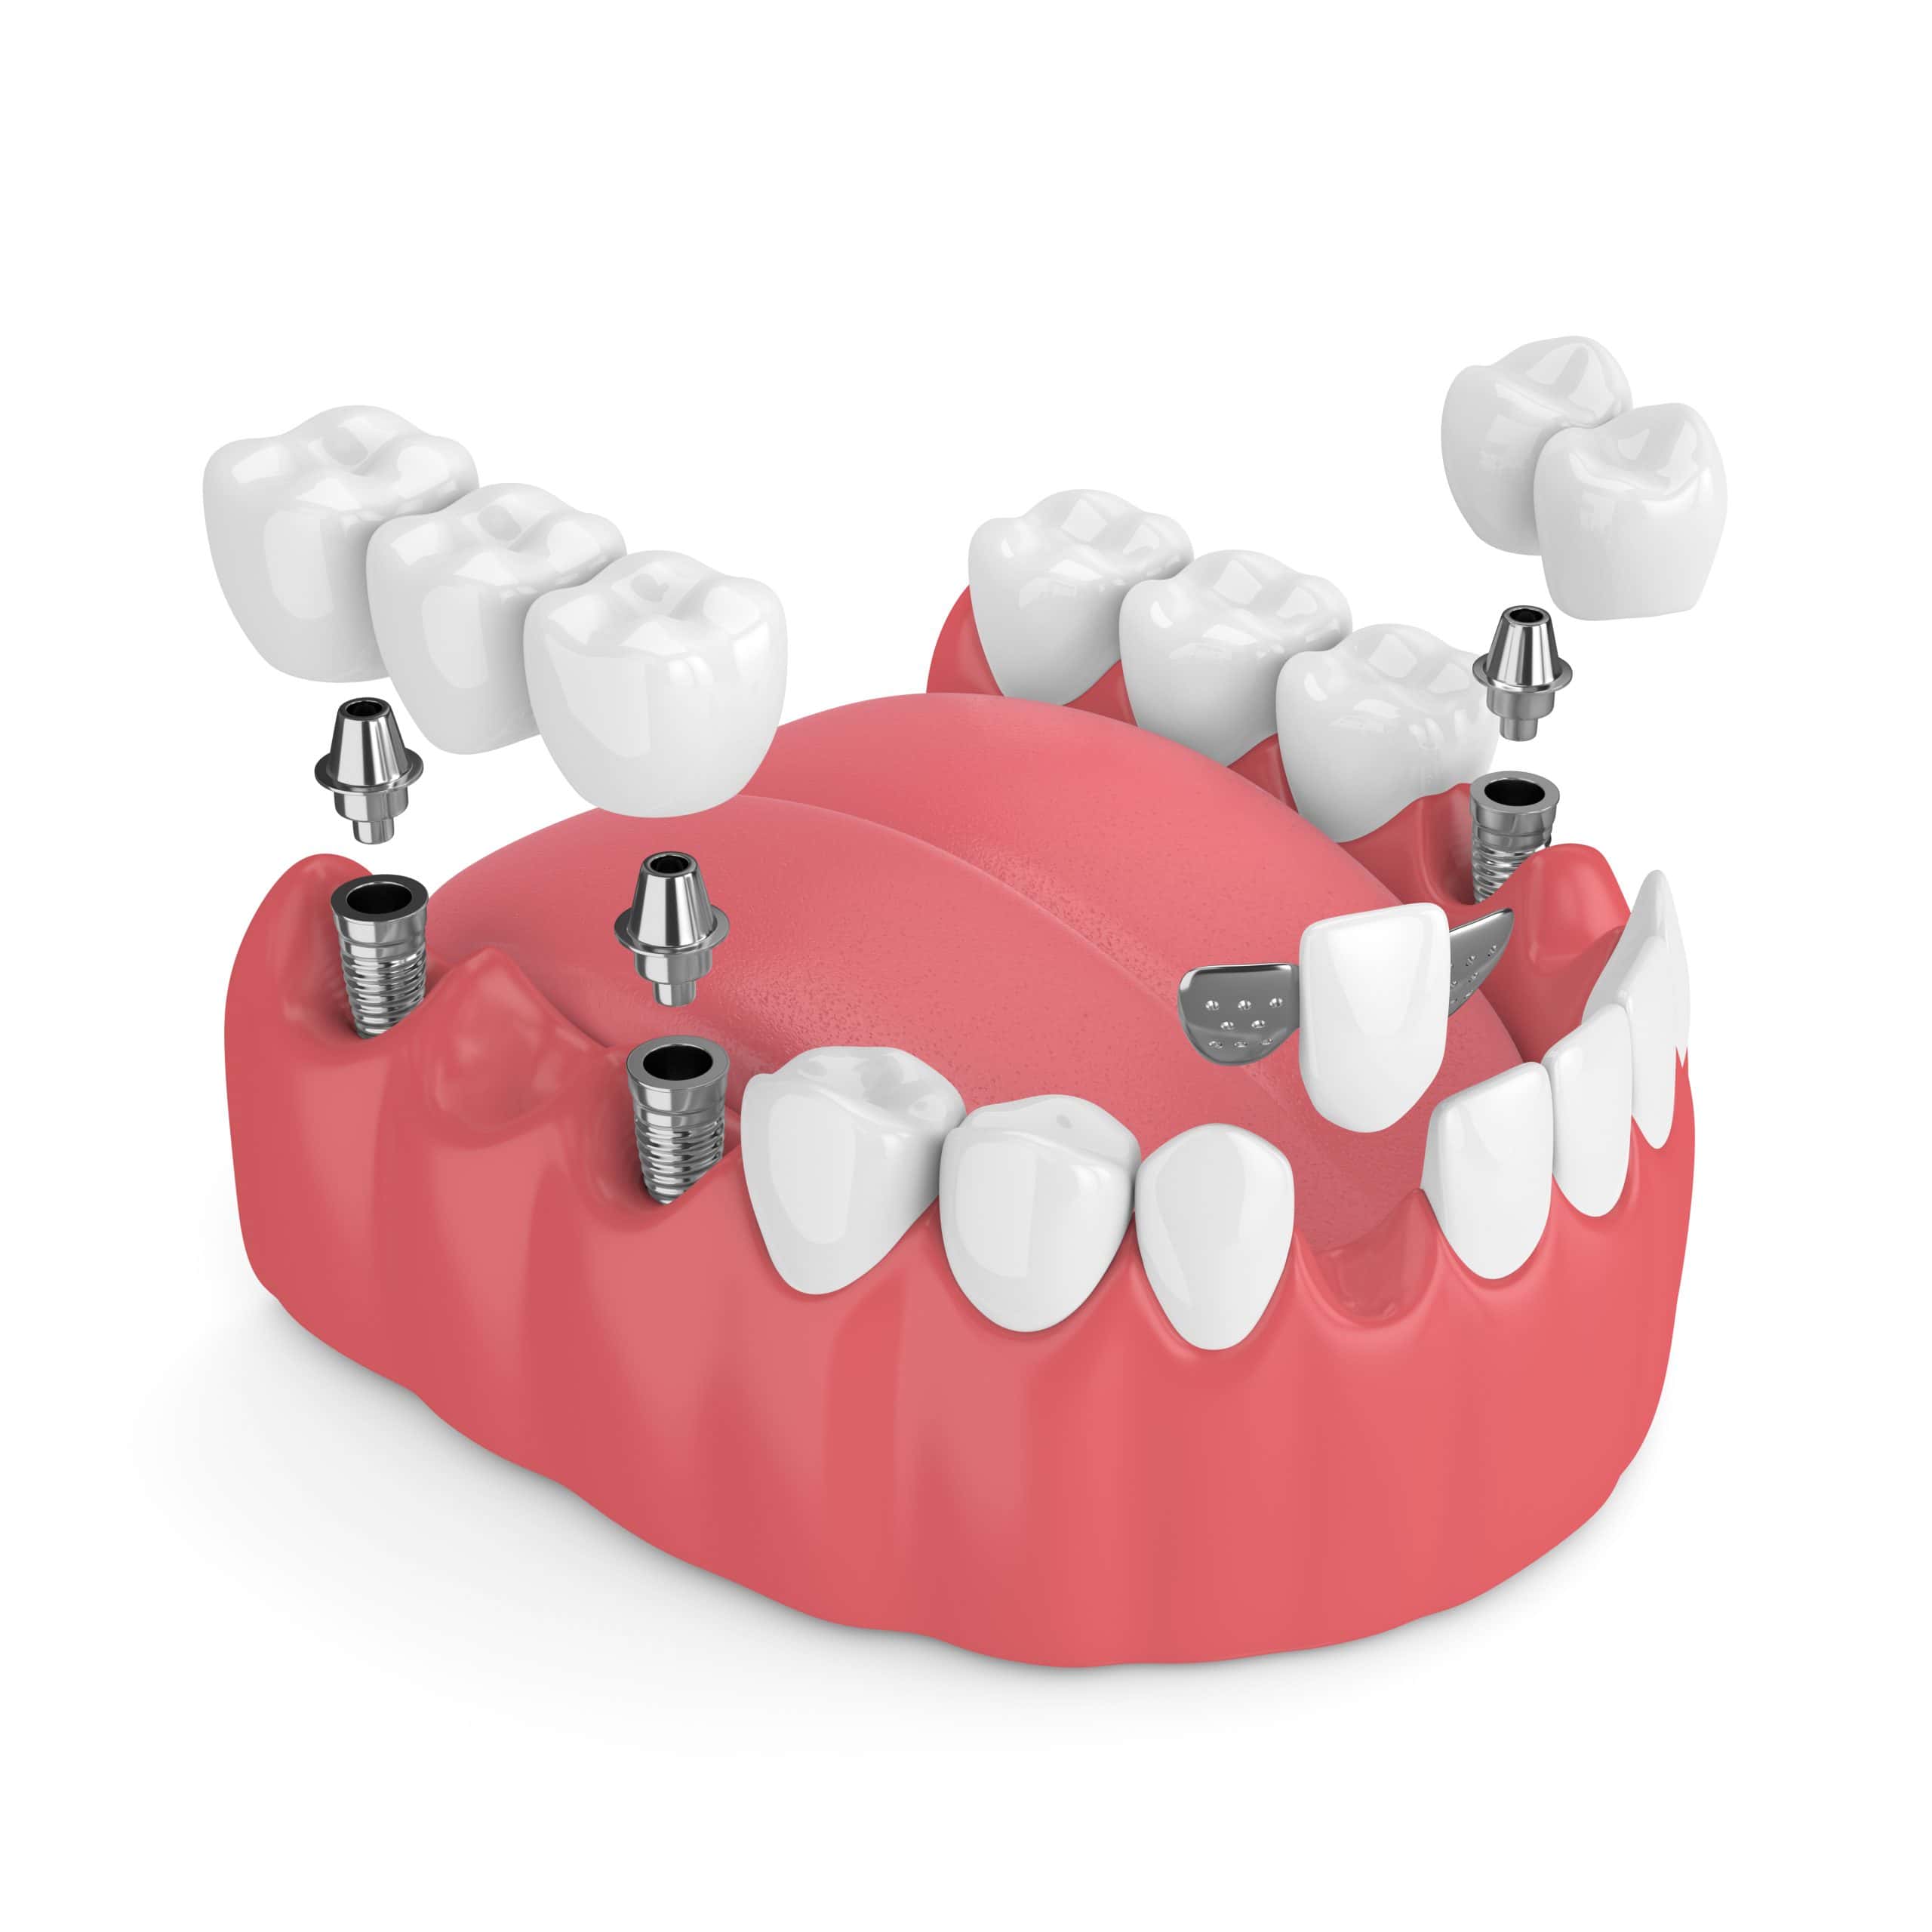 3d model of dental implants and dental bridges scaled